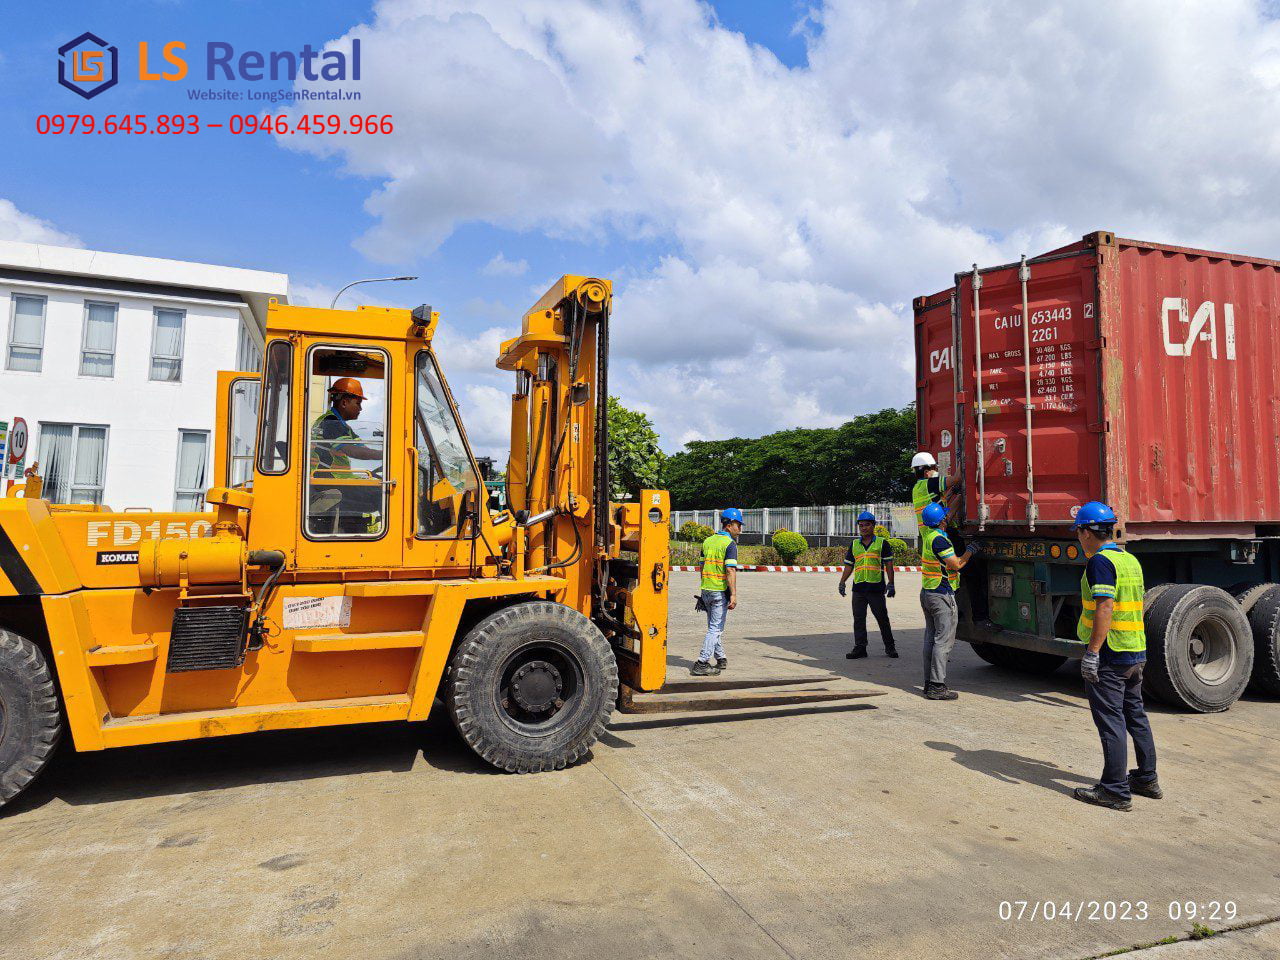 Thuê máy móc, thiết bị hỗ trợ rút container tại Núi Thành - Long Sen Rental